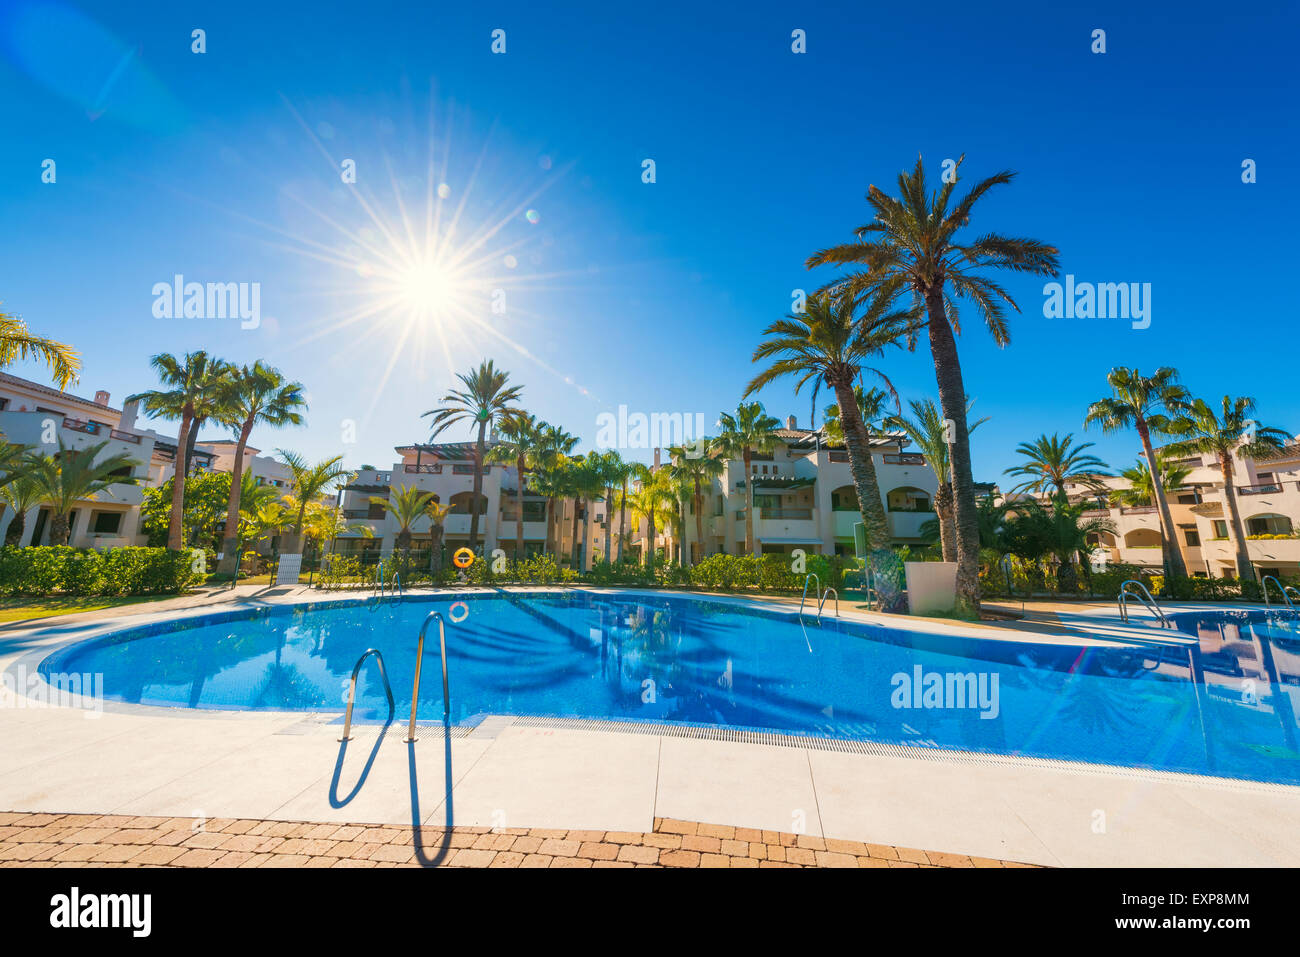 Real estate in Marbella, Malaga, Costa del Sol, Andalusia, Spain. Stock Photo